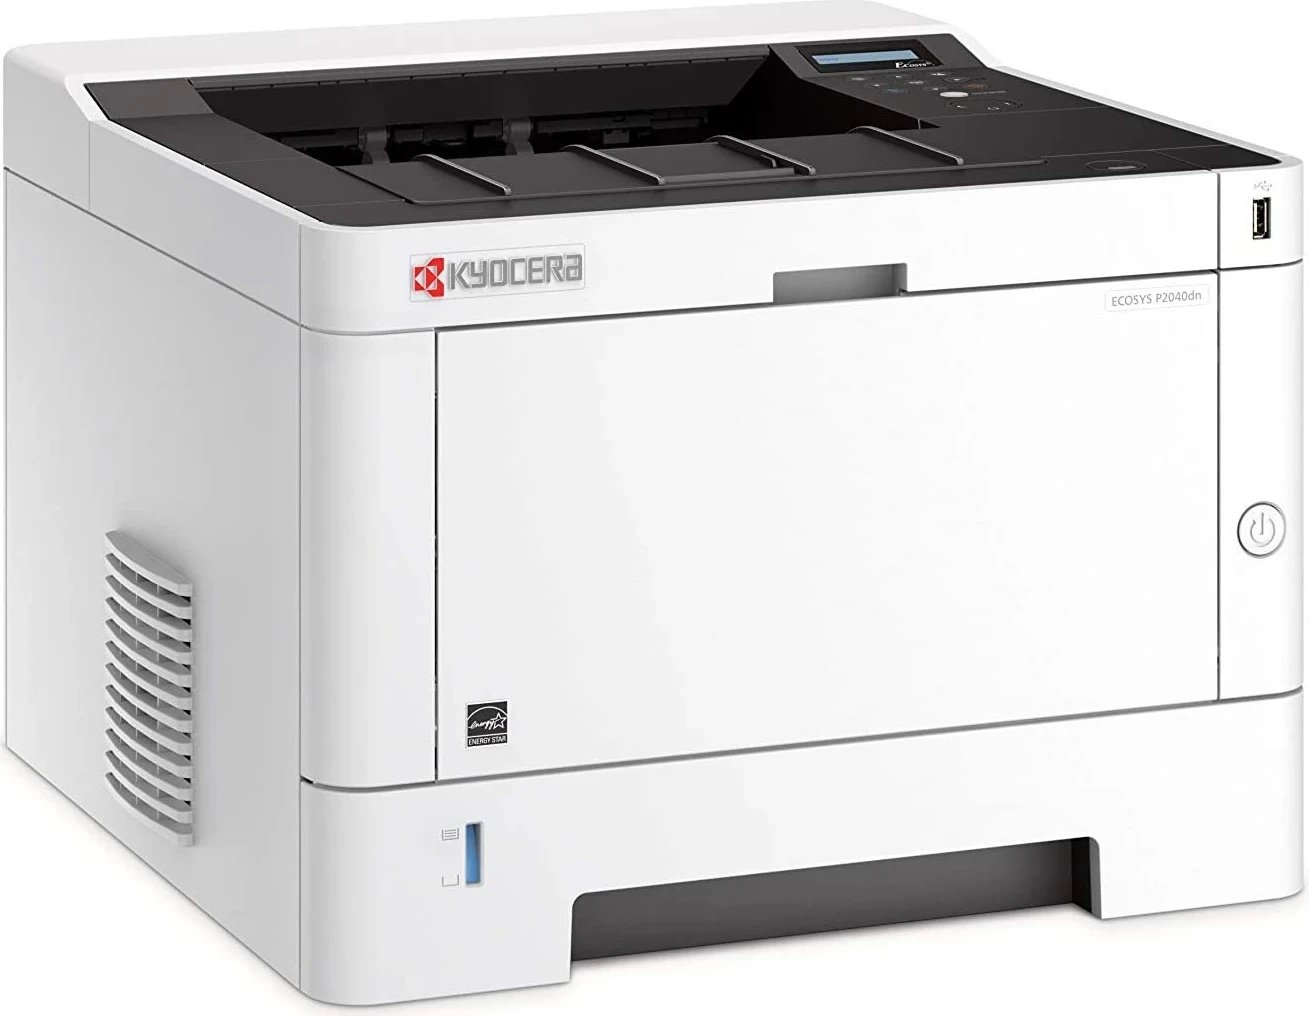 Printer Kyocera Ecosys P2040dn, i bardhë